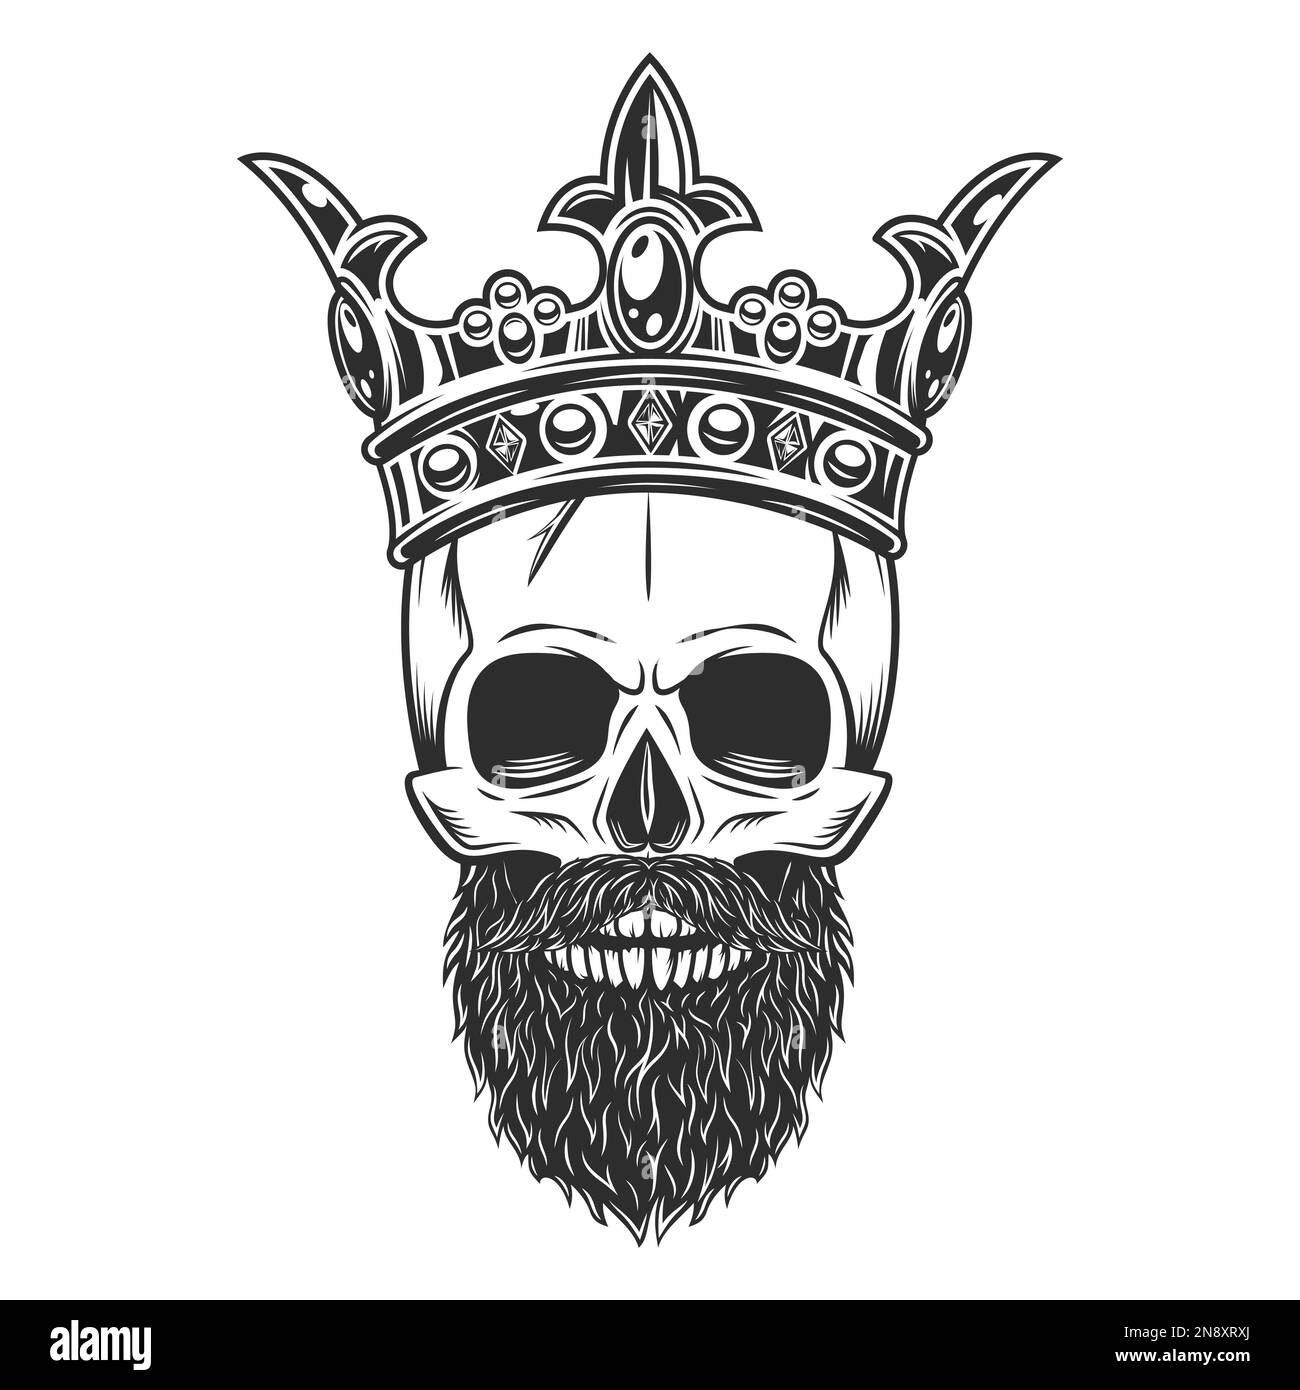 King with crown tattoo  divinetattoorajkot  Crown tattoo Tattoos King  crown tattoo